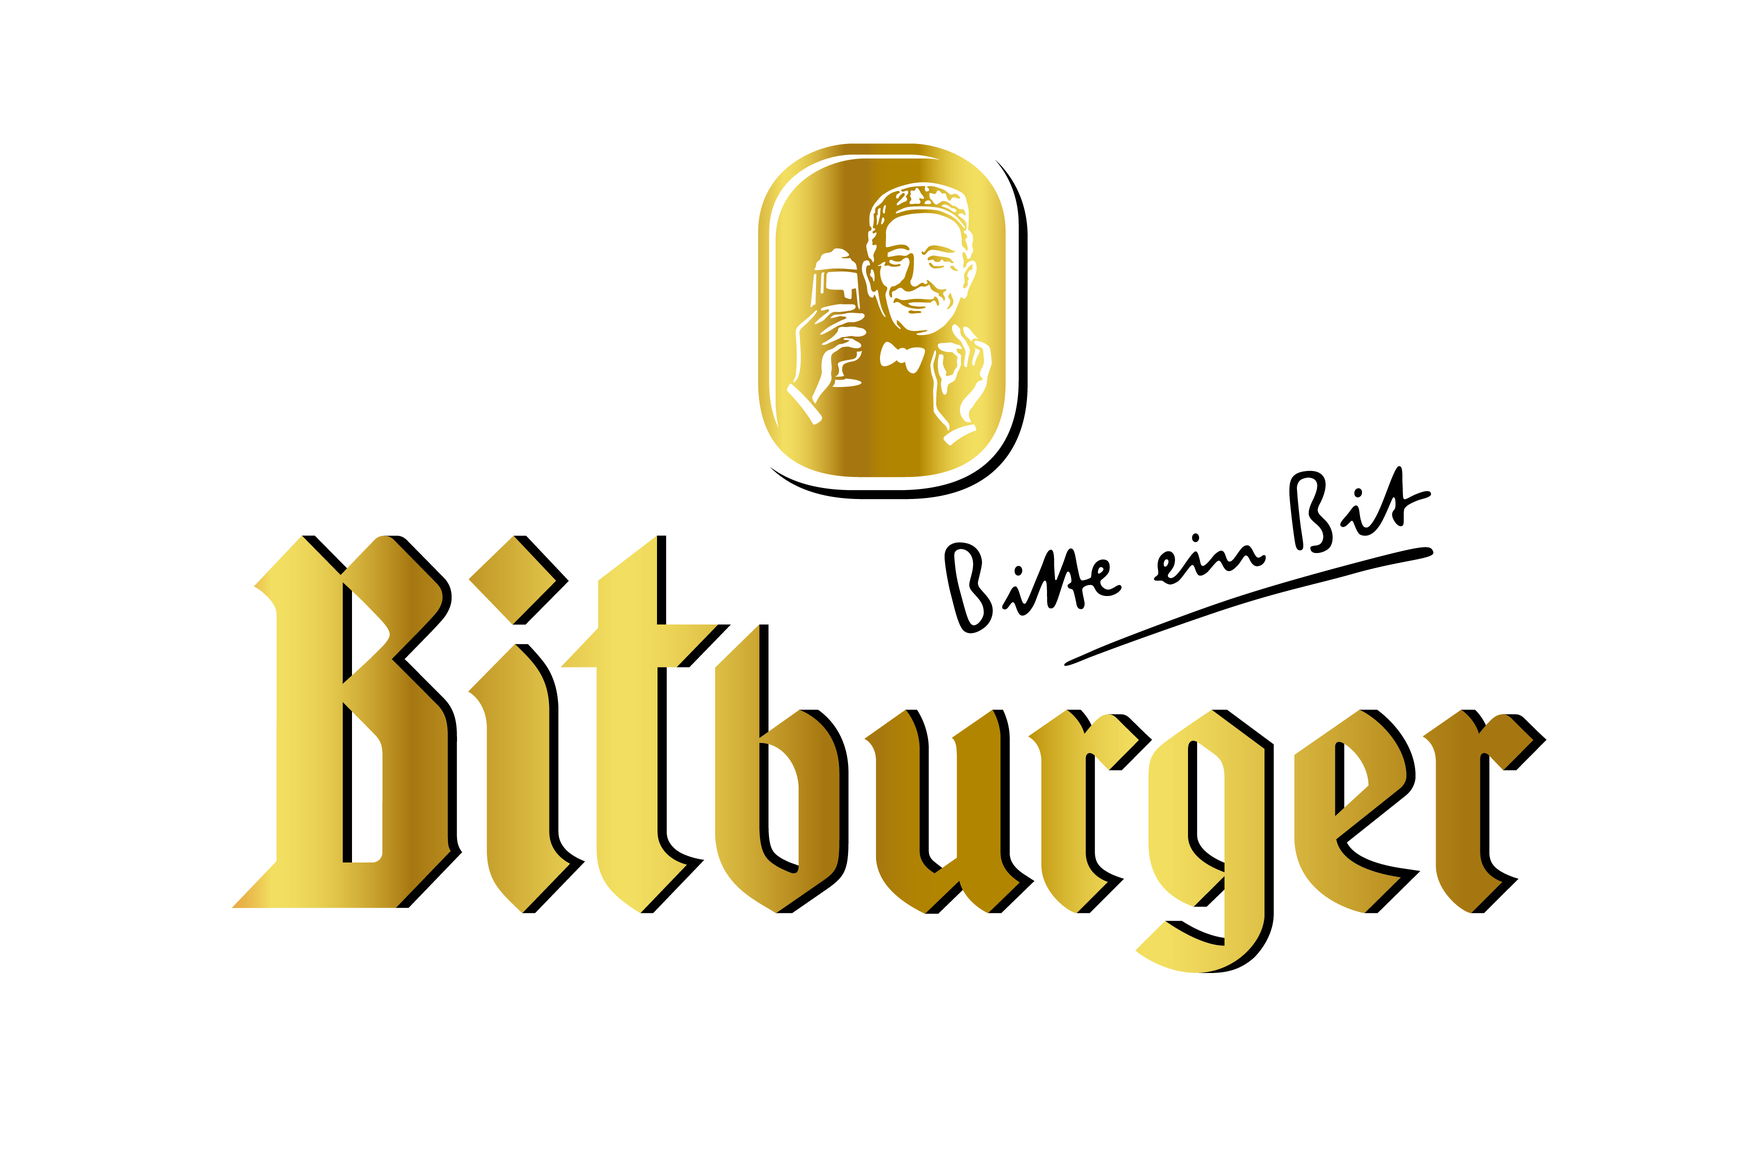 logo bitburger